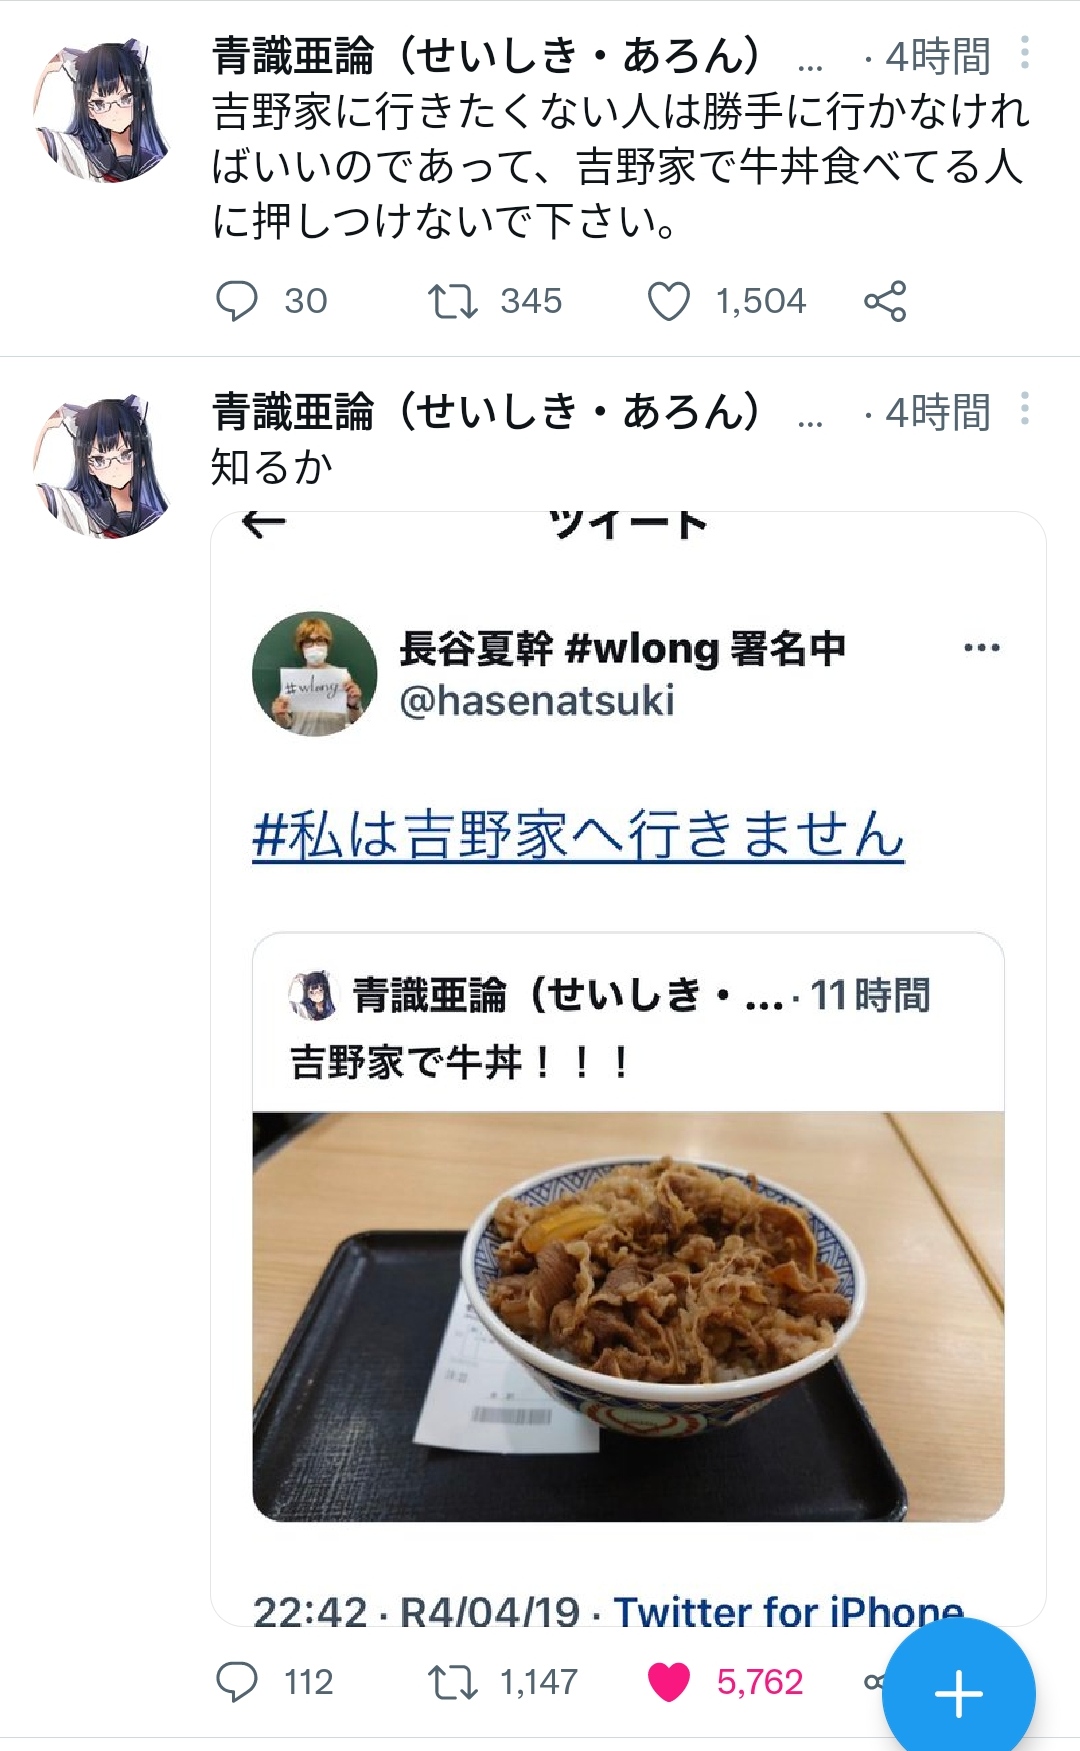 ツイッタラー「吉野家で牛丼食べた！」→フェミ「ｷﾞｬｵｯ!ｷﾞｬｵｯ!ｷﾞｬｵｵｵｵｵ!!!」\n_6